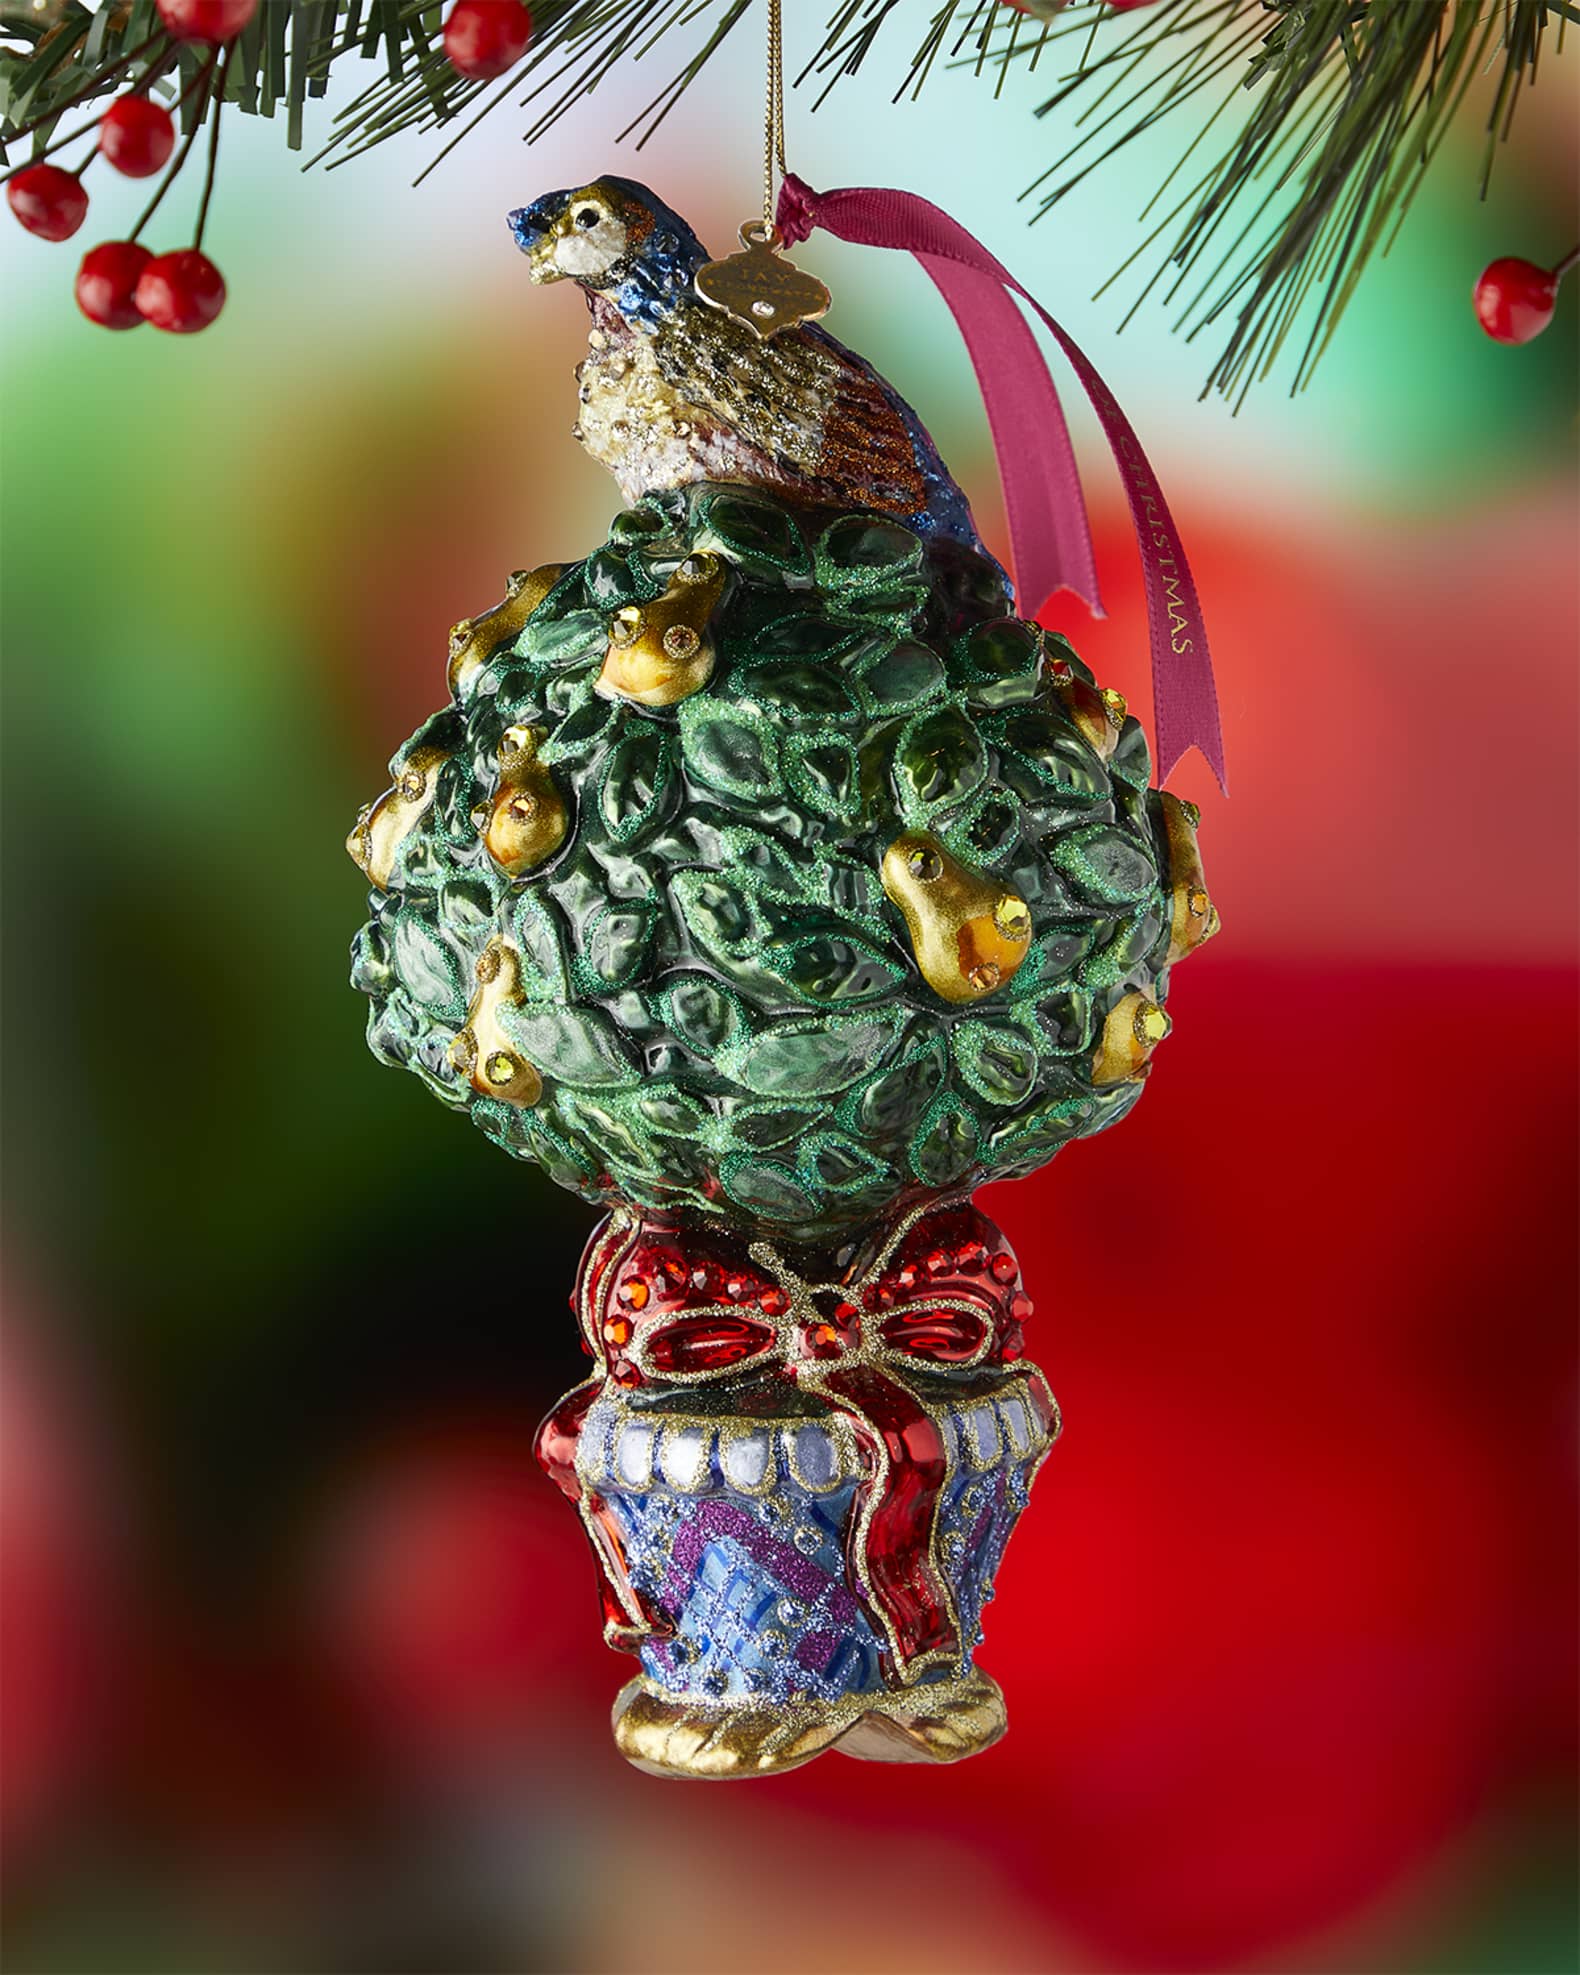 LOUIS VUITTON new doll ornament pendant. Exquisite bag decoration